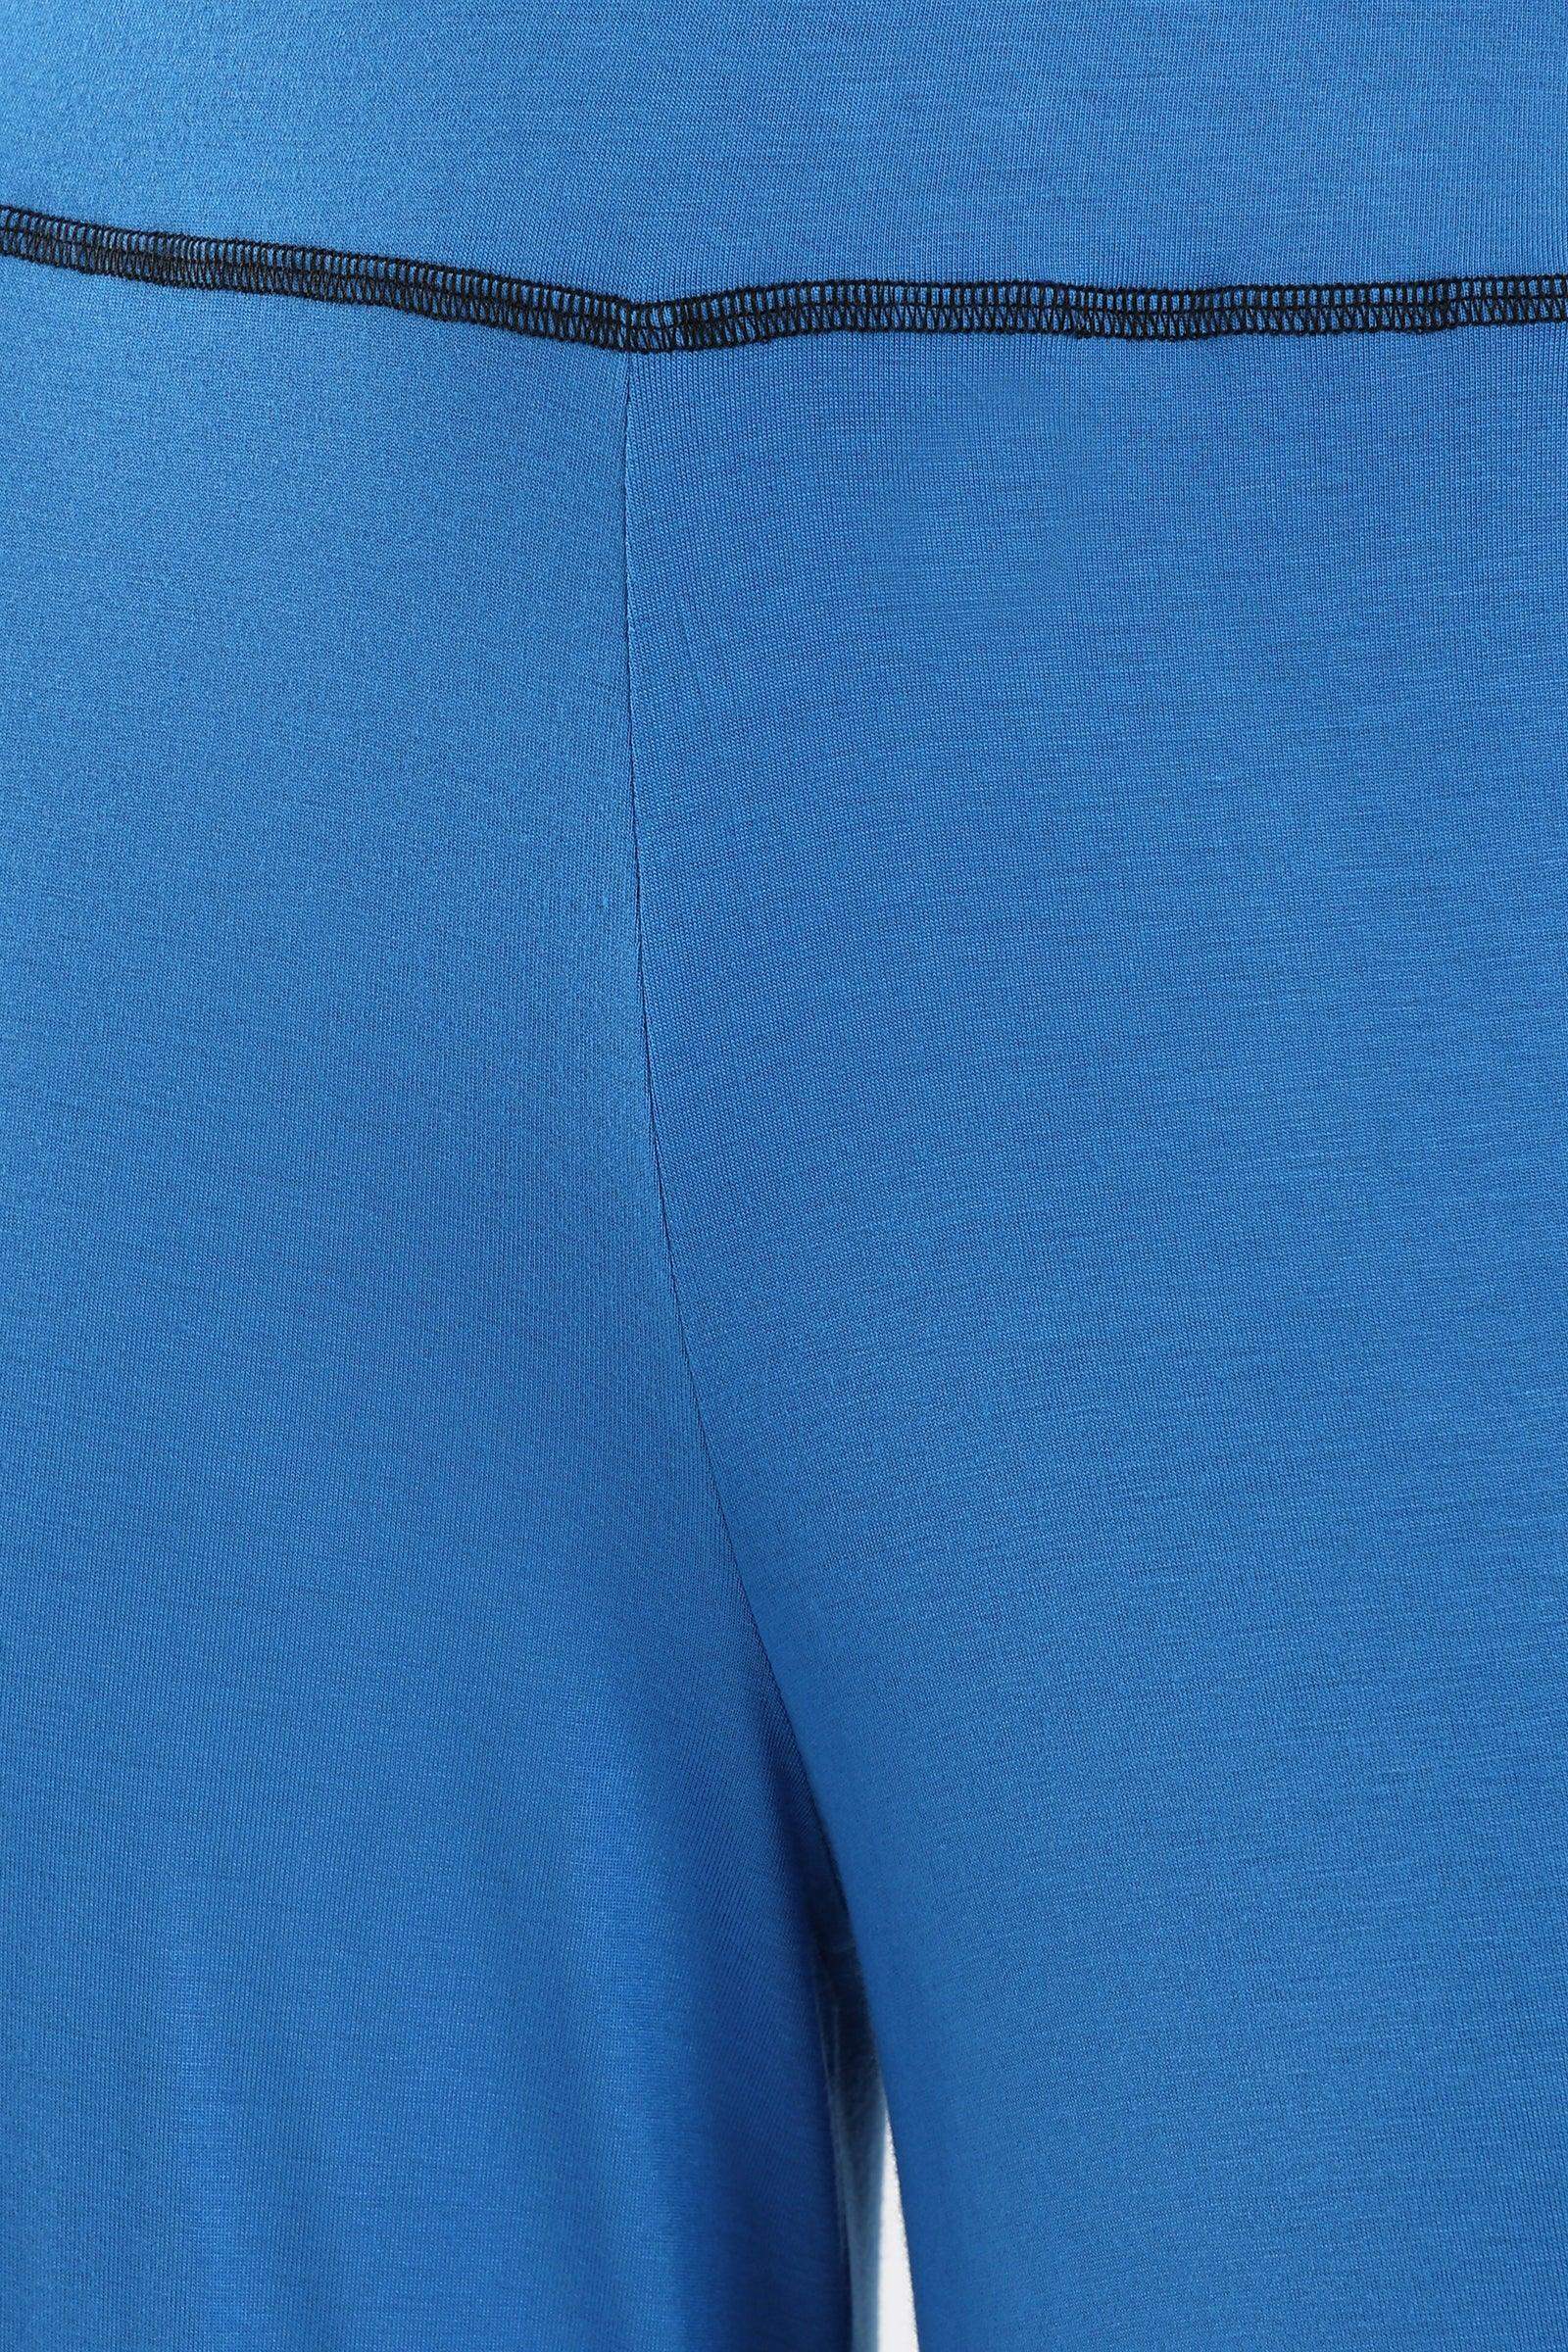 Stitched Line Lounge Pants - Carina - كارينا